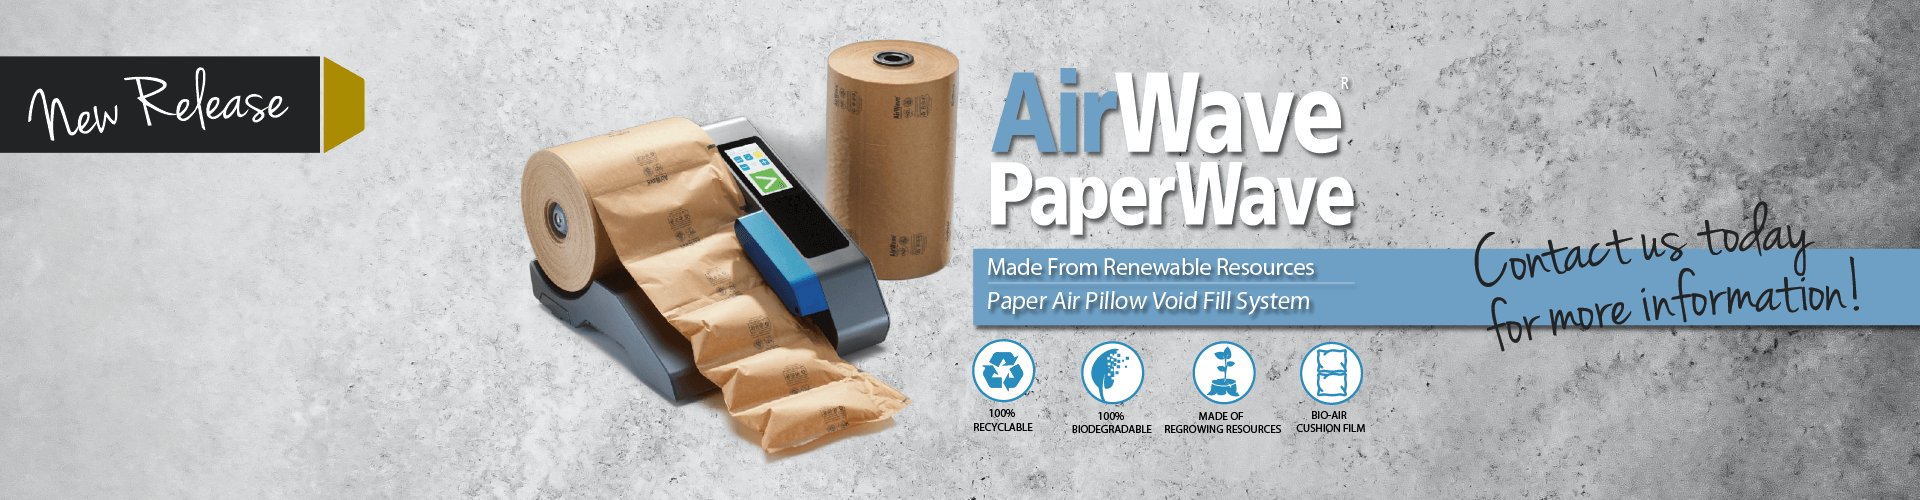 AirWave Paperware Promo